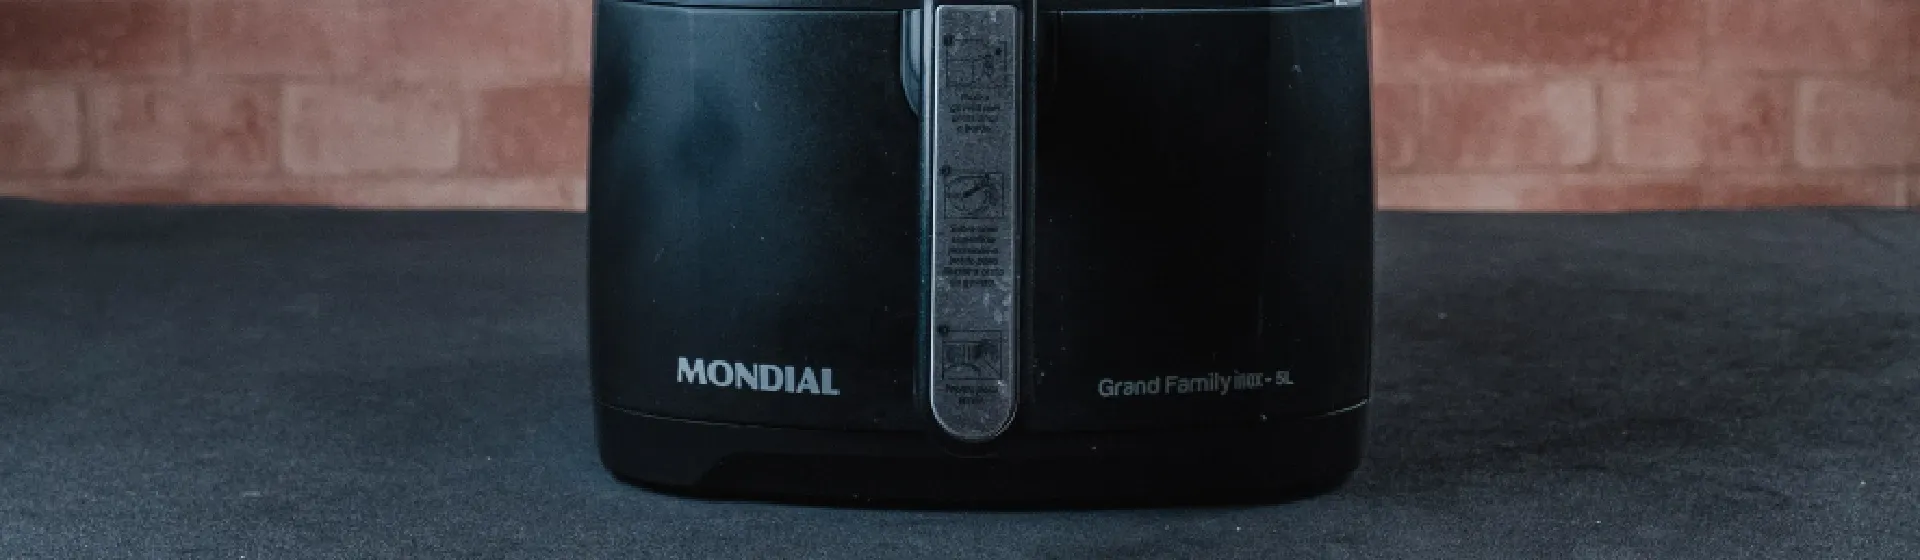 Air fryer Mondial Grand Family vs Britânia Pro Saúde: qual a melhor?